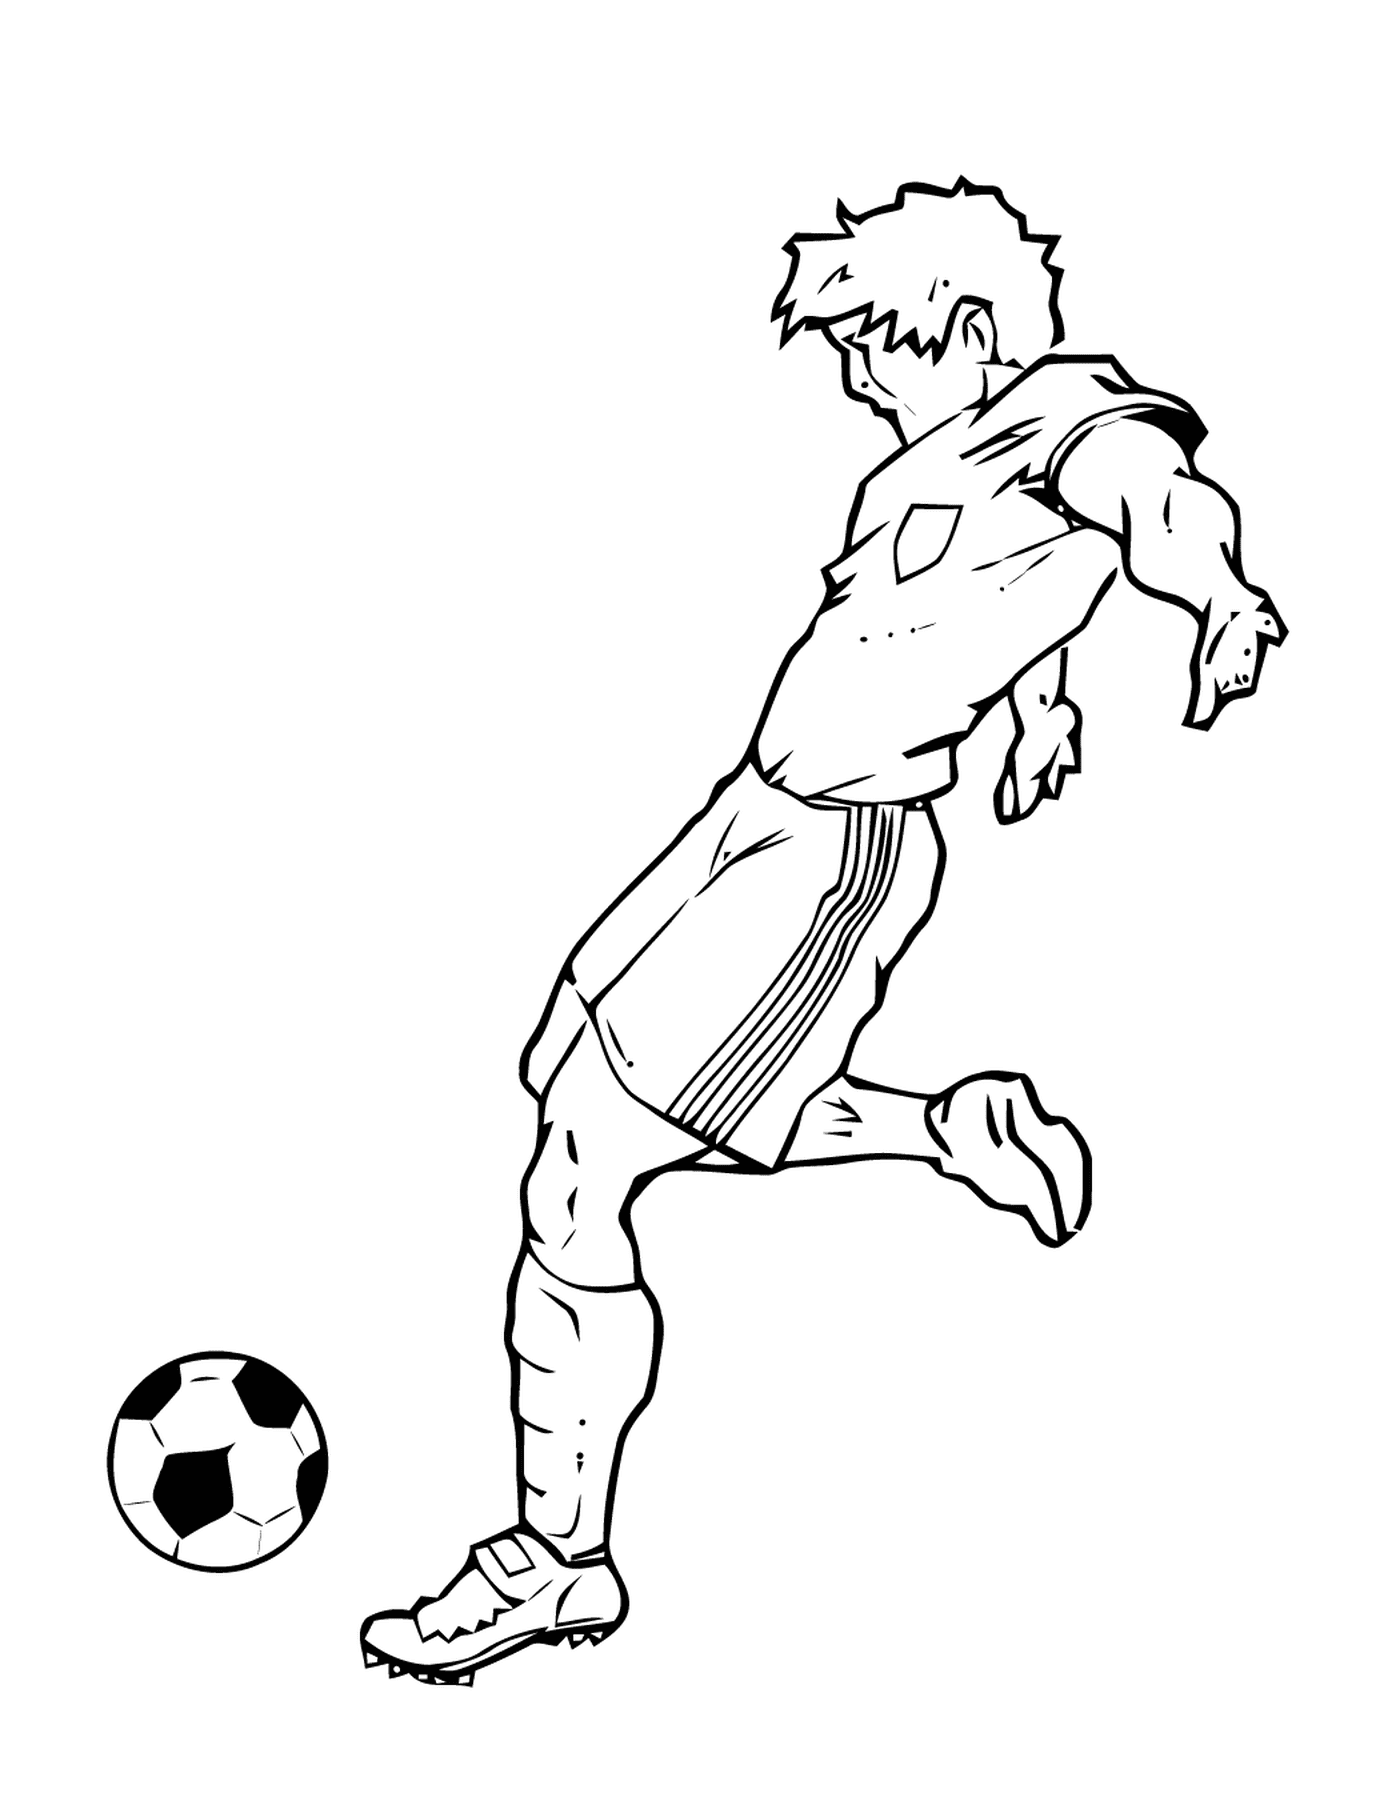  Спорт, футболист играет в мяч 